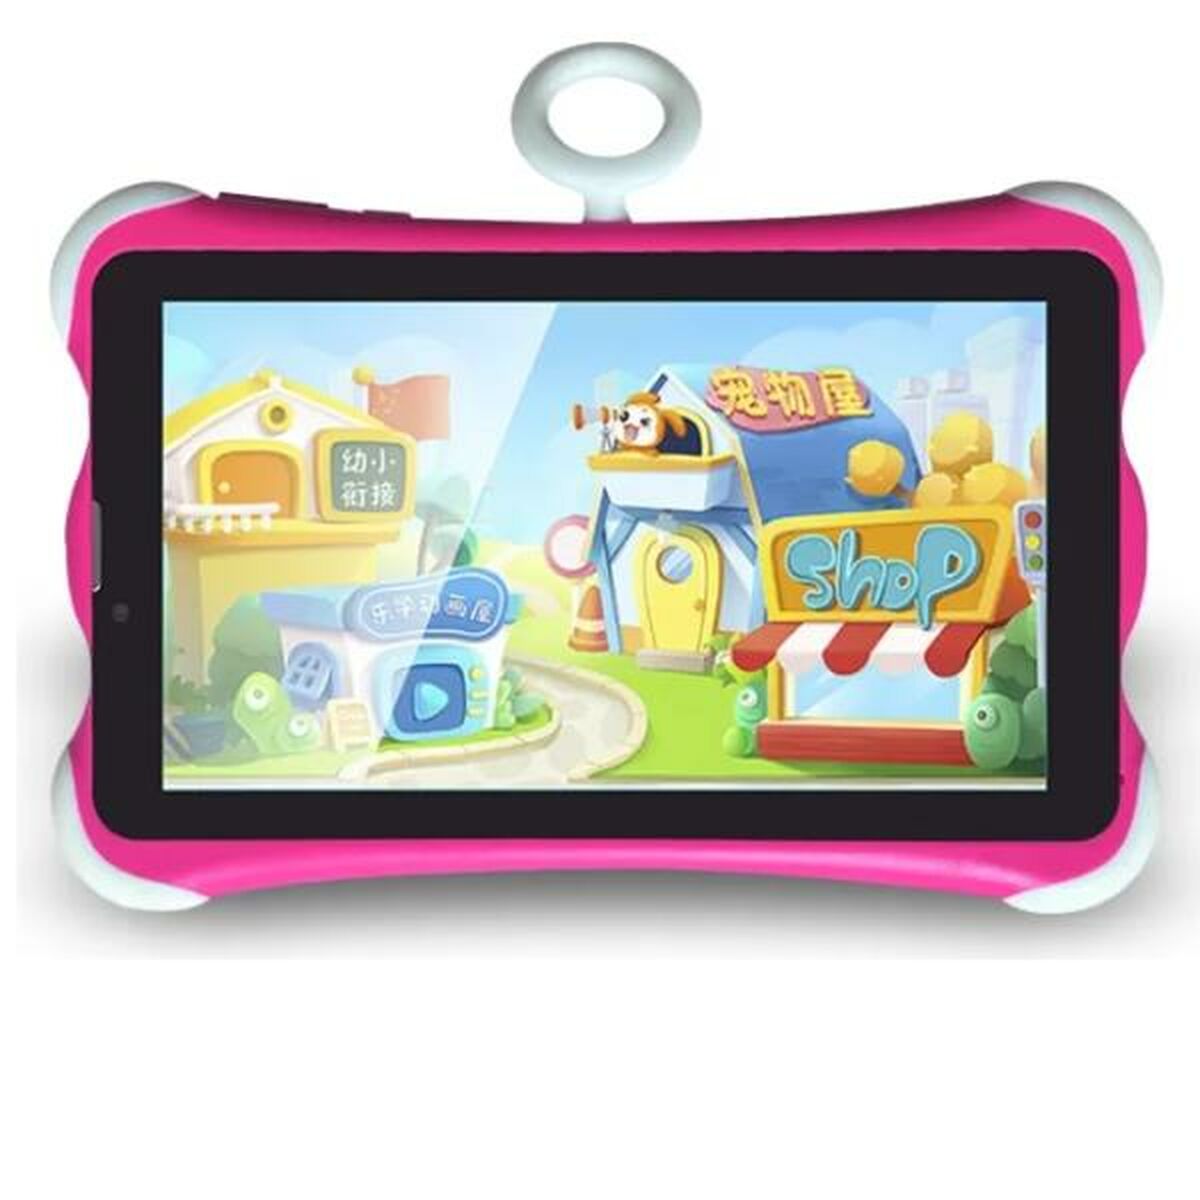 Interaktiv Tablet til Børn K712